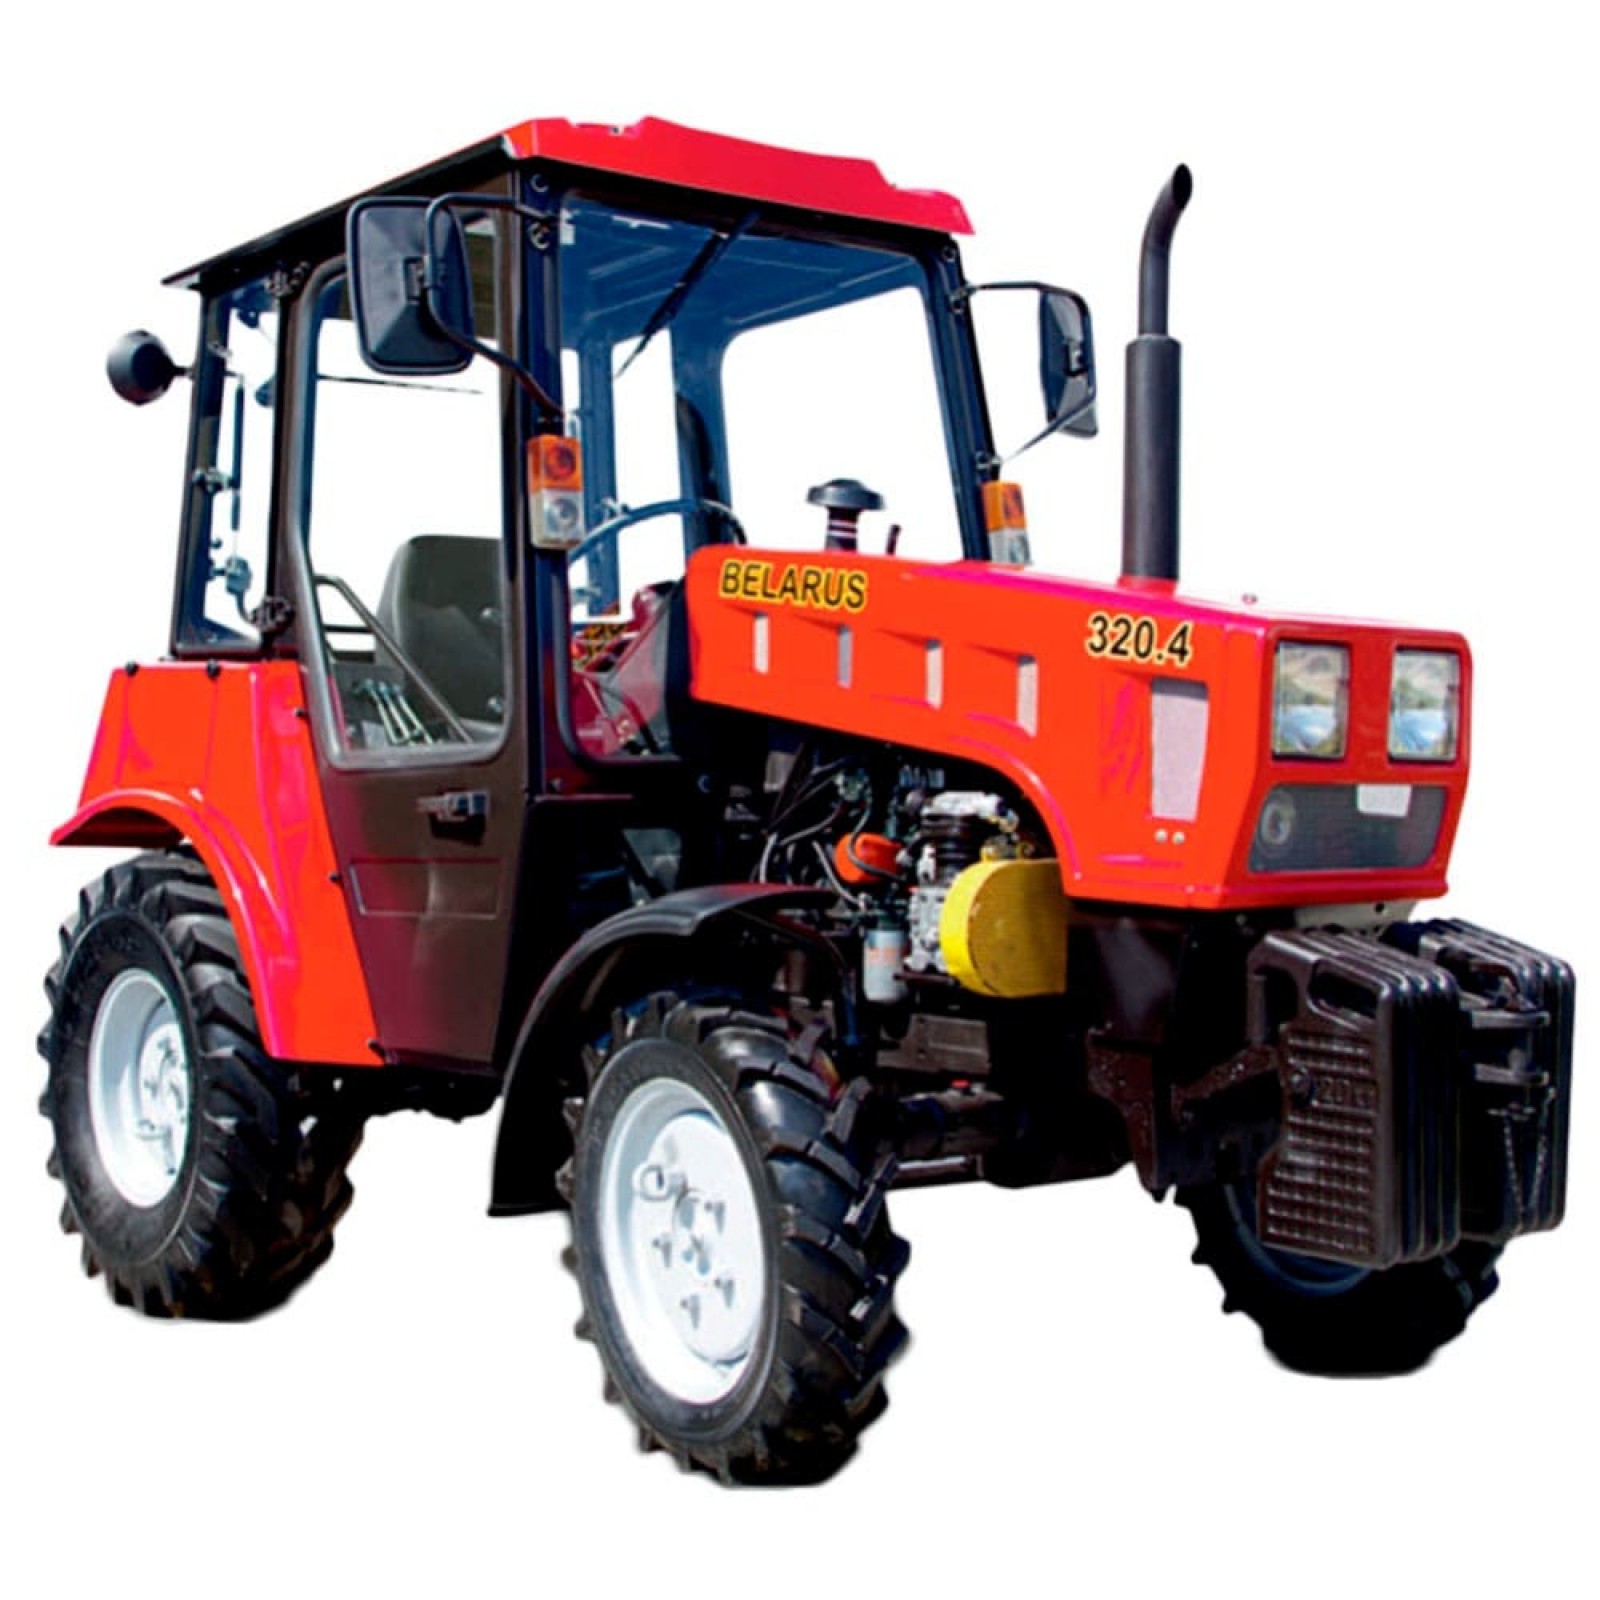 Тракторы BELARUS-320.4-320.4М